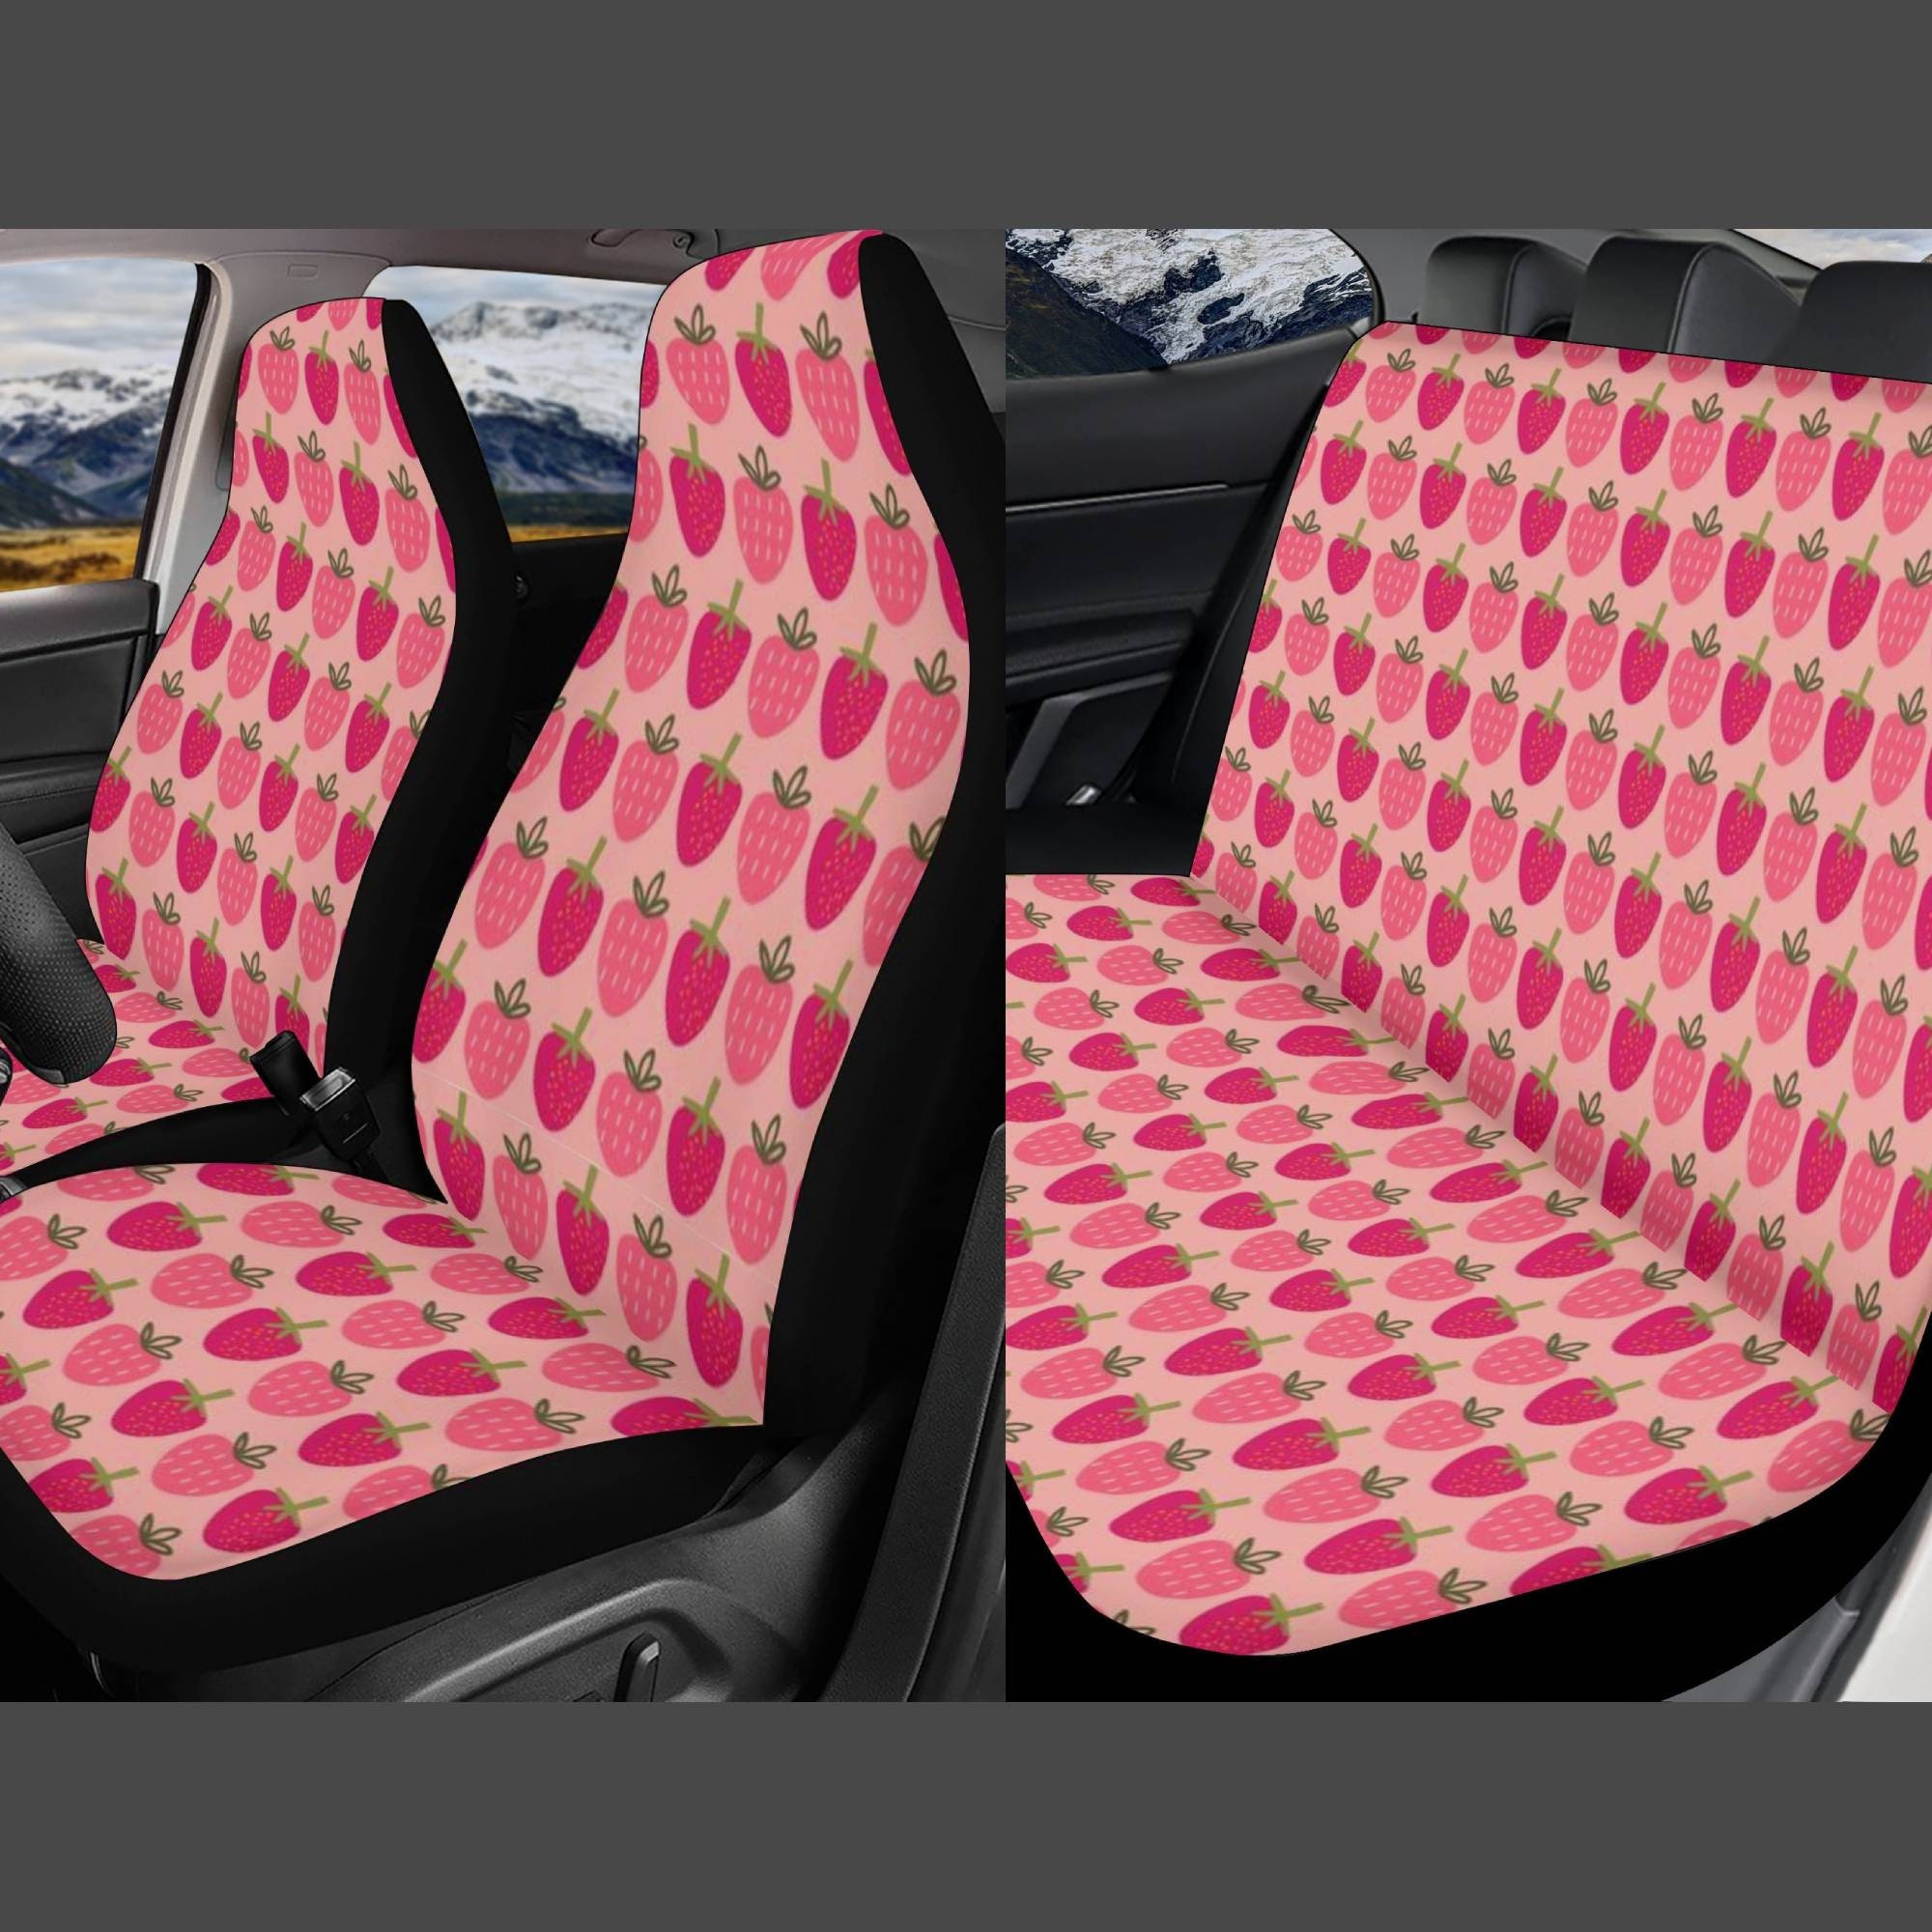 Pink Erdbeere Auto Sitzbezüge für Fahrzeug, Auto Sitzbezug für Frauen.  Erdbeere Print Auto Sitzaufbedeckung - .de